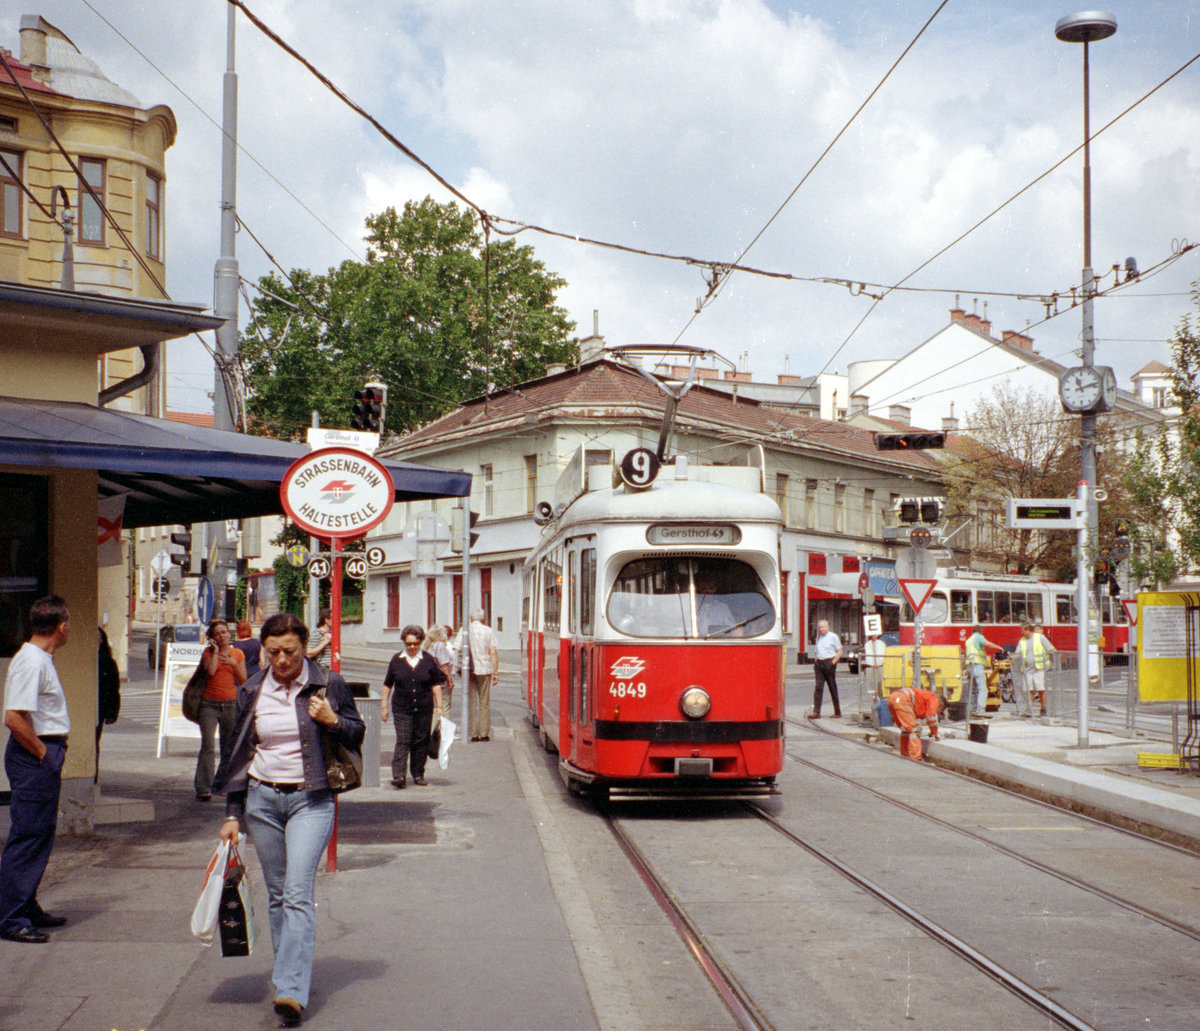 Wien Wiener Linien SL 9 (E1 4859) XVIII, Währing, Gersthof, Hst. S-Bahnhof Gersthof am 25. Juli 2007. - Scan von einem Farbnegativ. Film: Agfa Vista 200. Kamera: Leica C2.